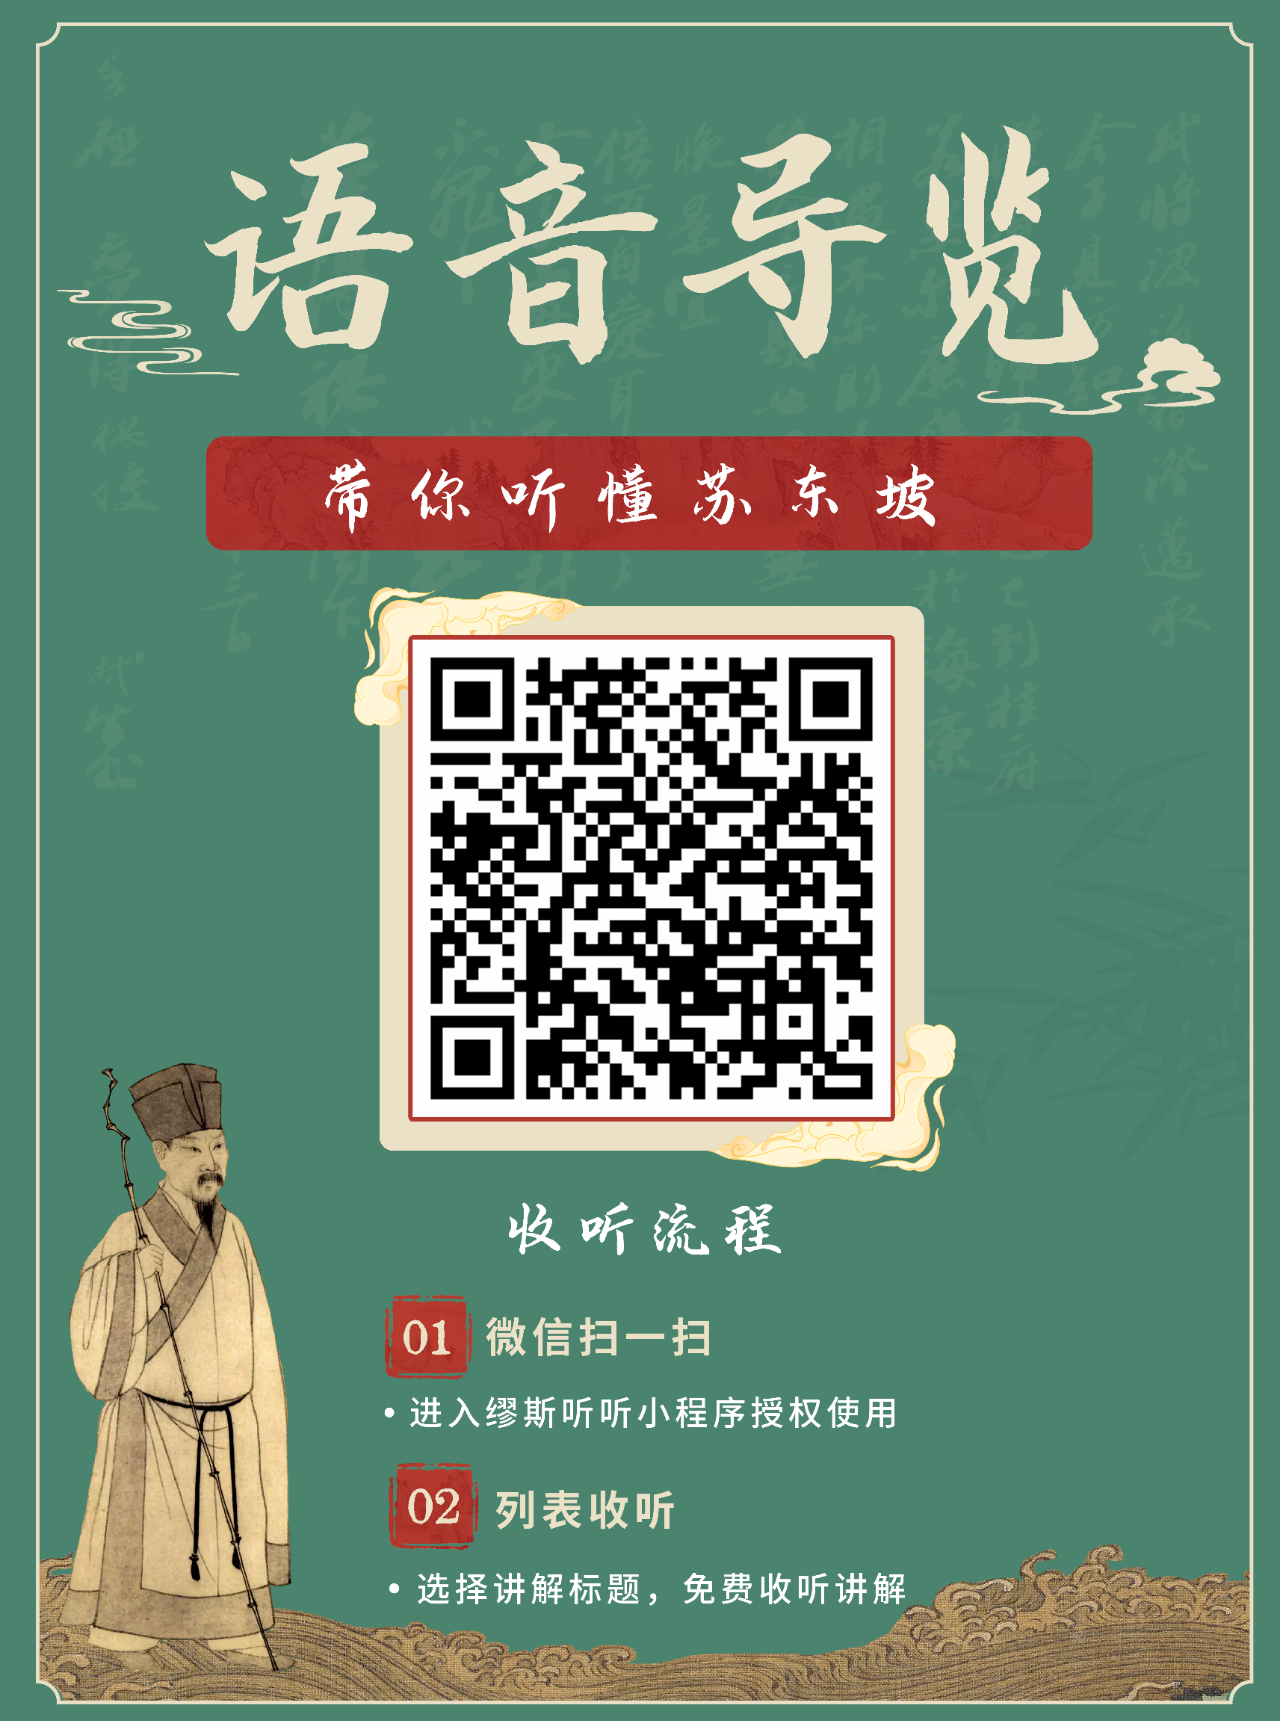 扫二维码即可收听苏轼主题文物展语音讲解。海南省博物馆供图